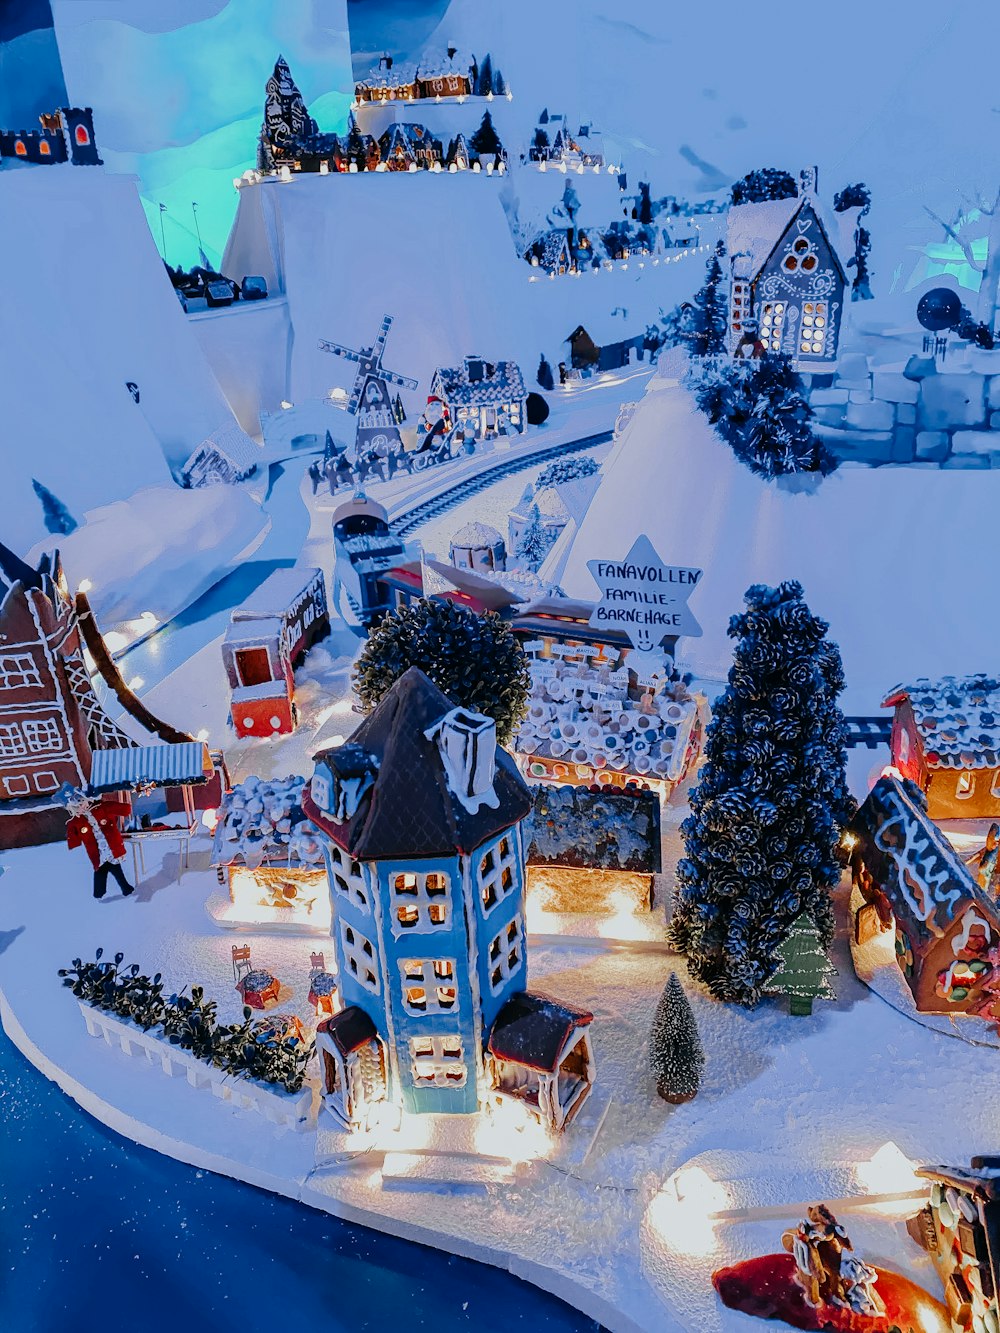 조명과 장식이 있는 크리스마스 마을의 모델